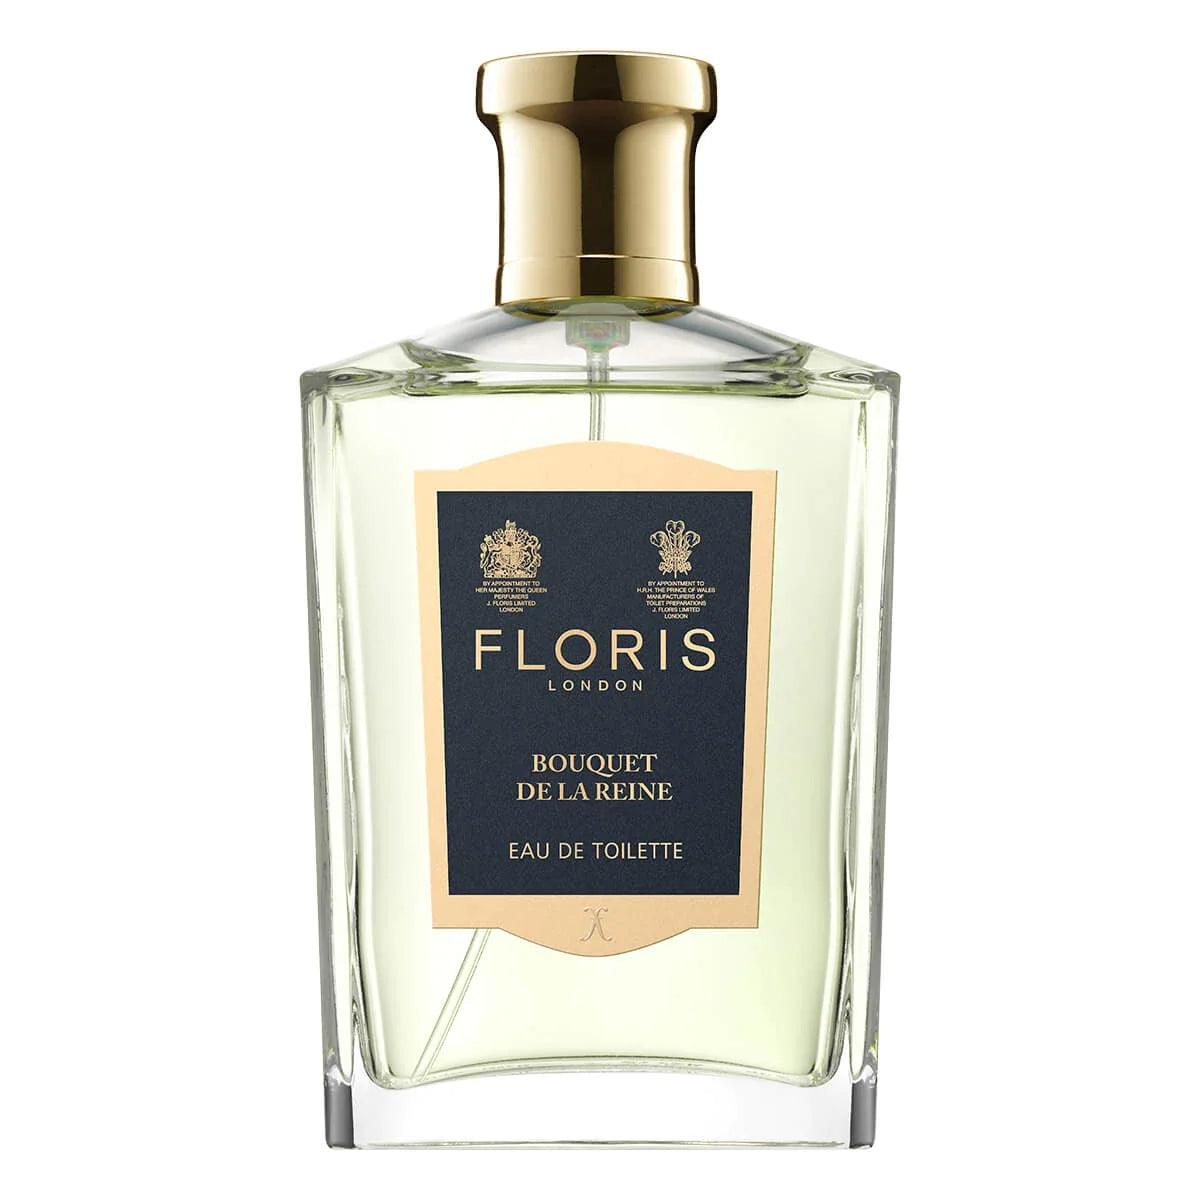 Floris Bouquet de la Reine, Eau de Toilette, 10 ml | Parfyme | Floris London | JK SHOP | JK Barber og herre frisør | Lavepriser | Best